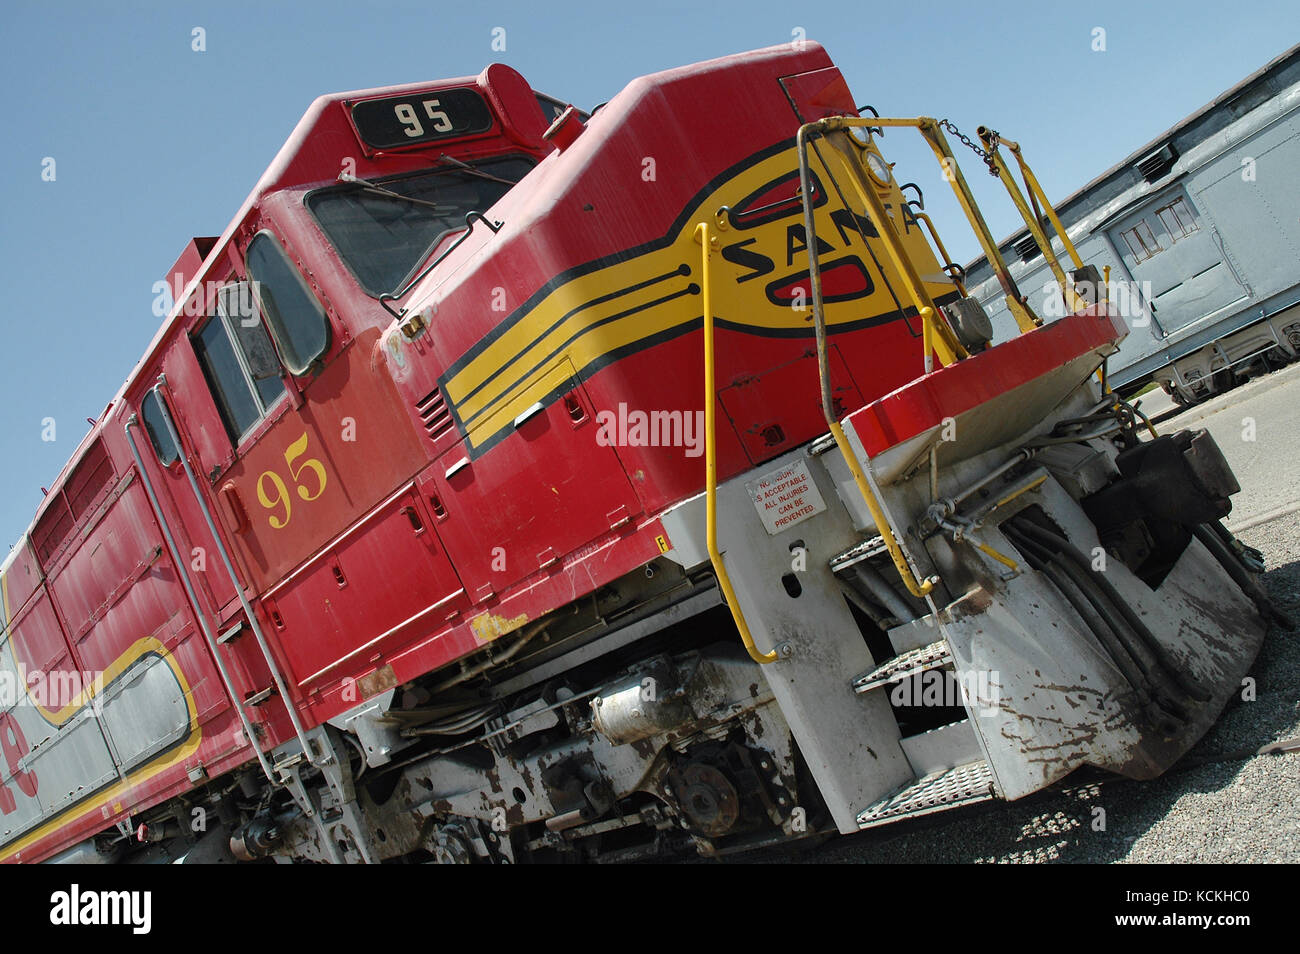 Sante fe locomotore in mostra presso la Western american Railroad Museum, barstow, california, Stati Uniti d'America Foto Stock